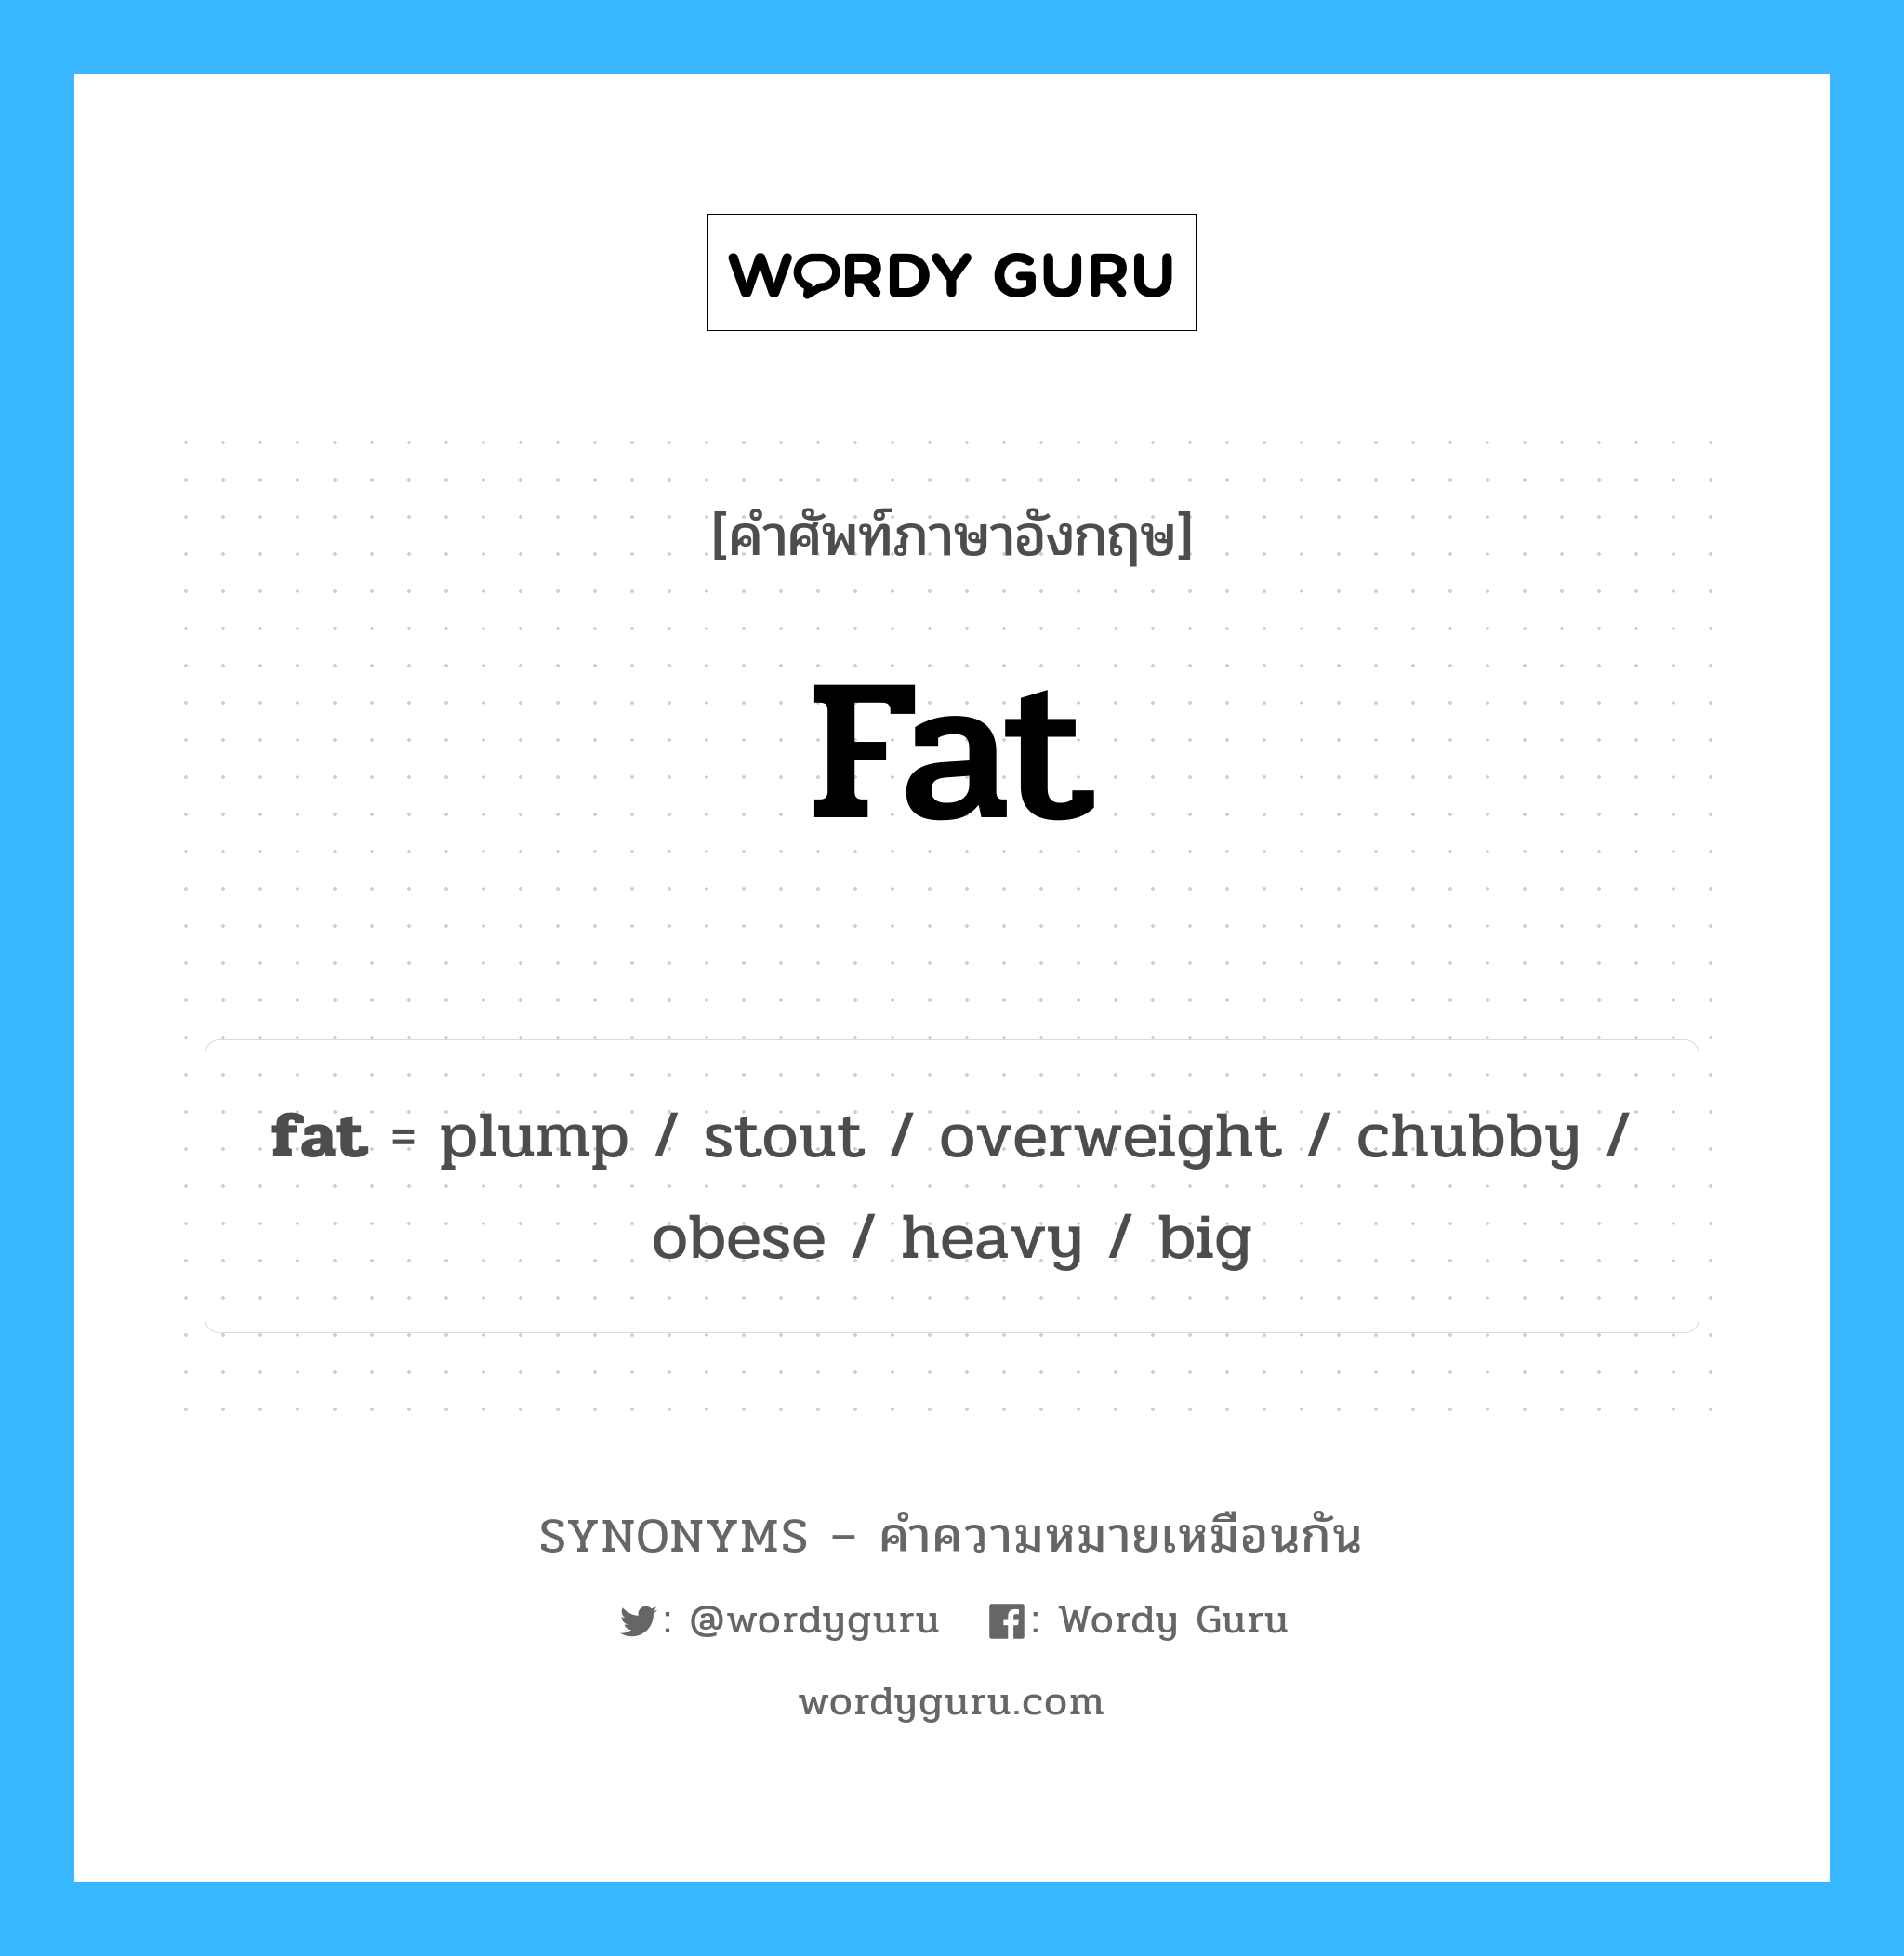 heavy เป็นหนึ่งใน large และมีคำอื่น ๆ อีกดังนี้, คำศัพท์ภาษาอังกฤษ heavy ความหมายคล้ายกันกับ fat แปลว่า หนัก หมวด fat